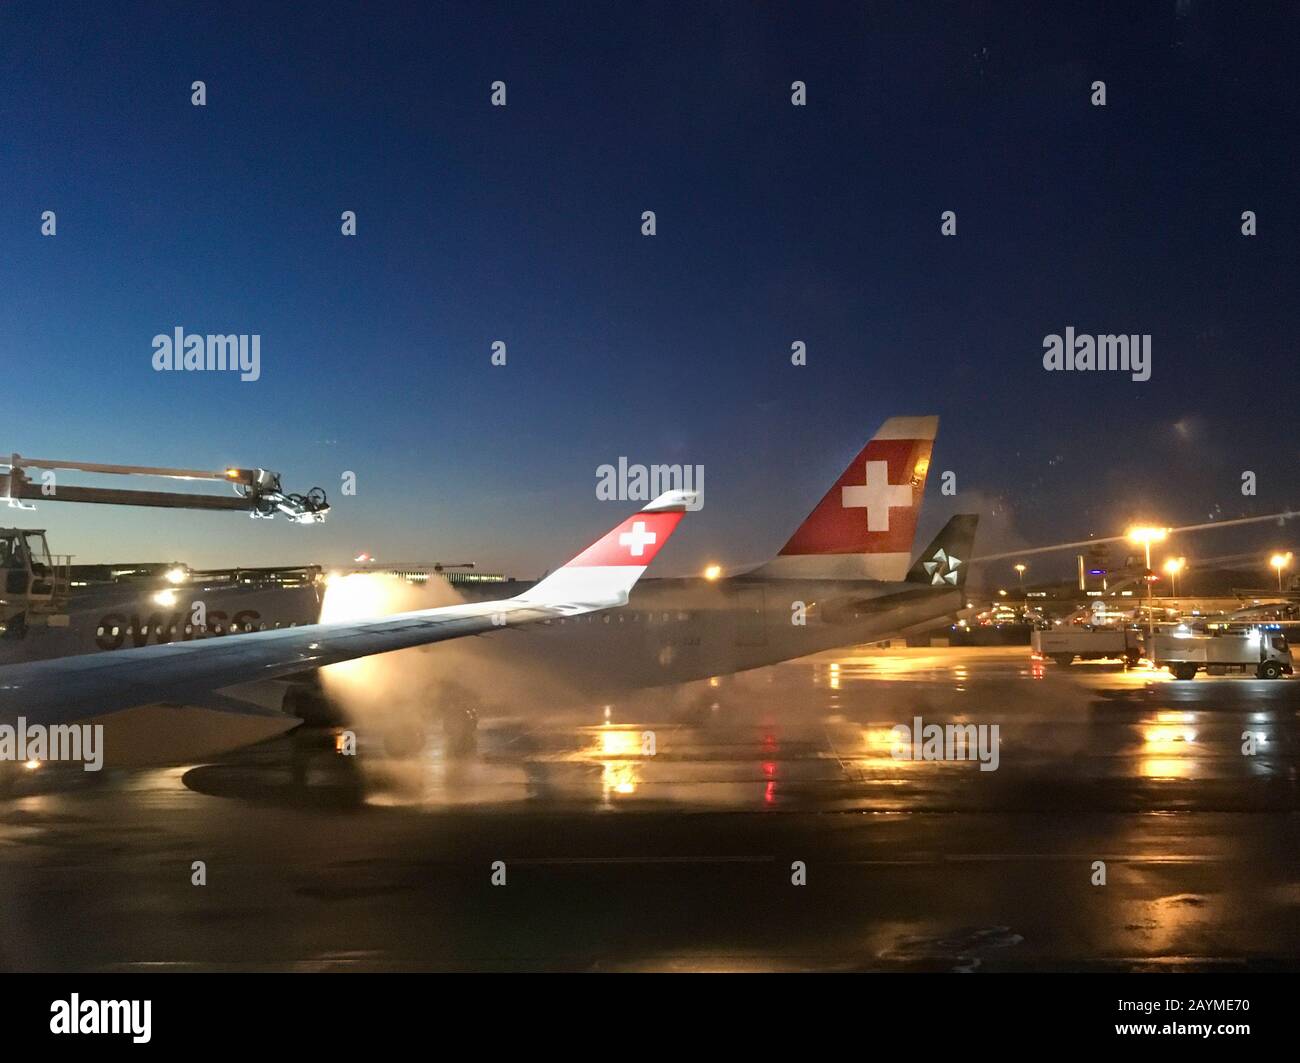 Aéroport de Zurich, Suisse - 15 janvier 2020: Pendant une matinée d'hiver froide, les véhicules spéciaux sont des avions de passagers de dégivrage de Swiss International Airlines à l'aéroport de Zurich Kloten. Pendant les mois d'hiver, la procédure de dégivrage entraîne régulièrement des retards dans le transport aérien. Banque D'Images